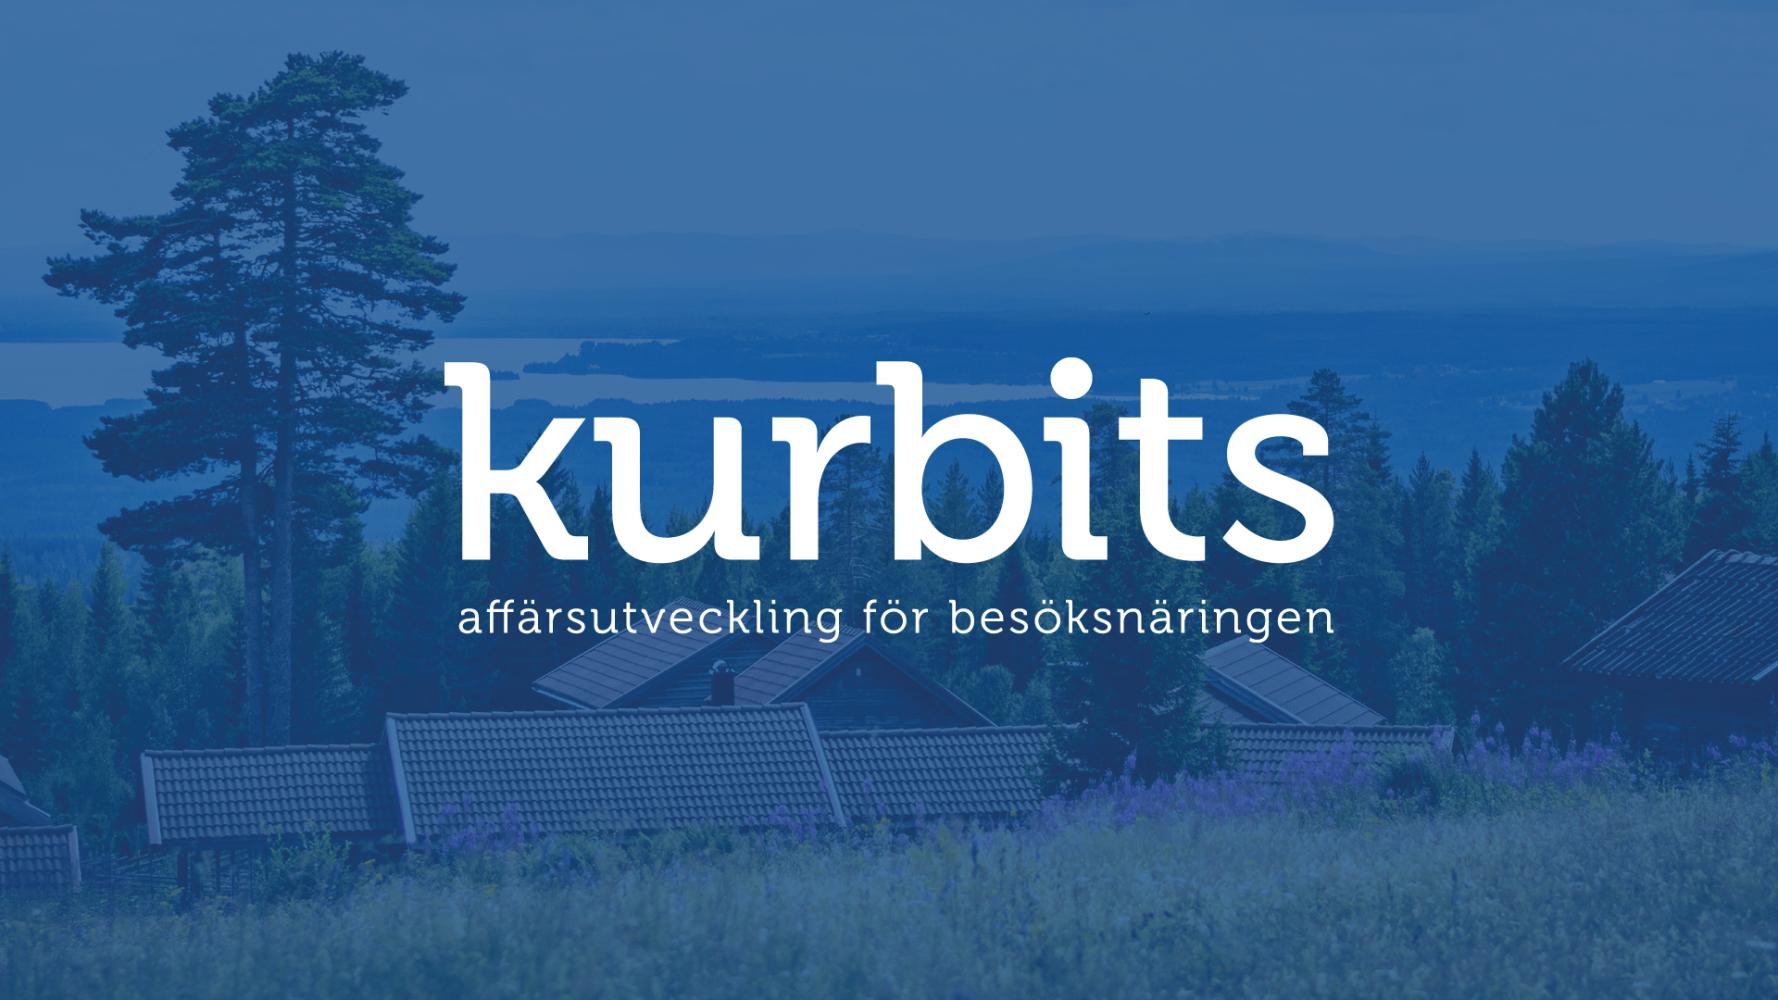 Logotyp för affärsutvecklingsprogrammet Kurbits